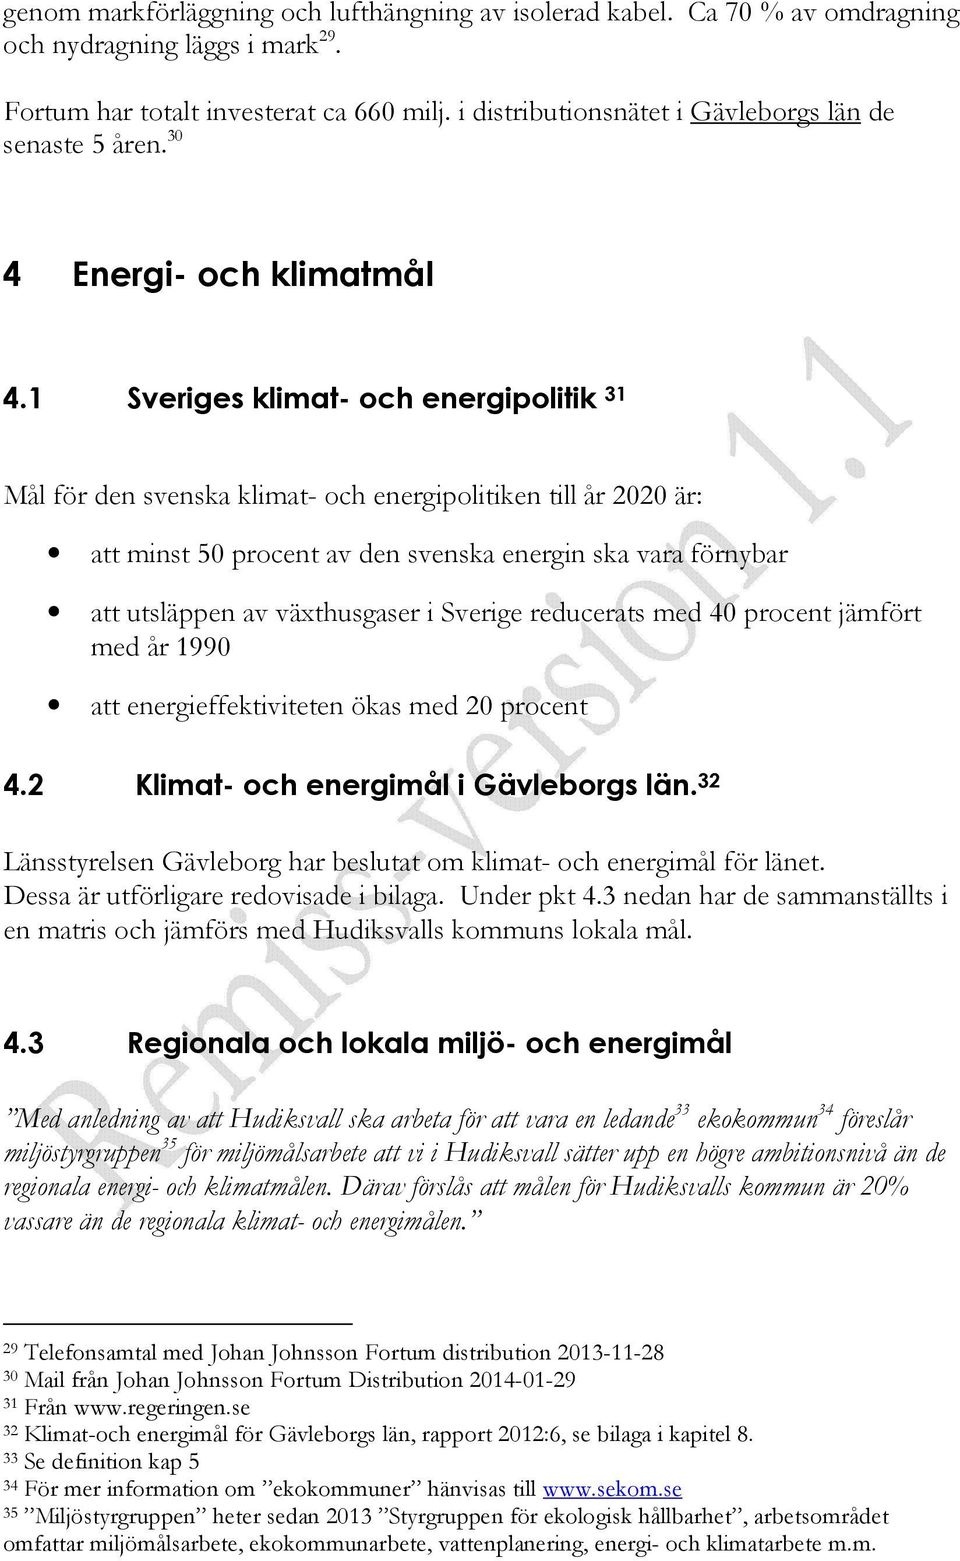 1 Sveriges klimat- och energipolitik 31 Mål för den svenska klimat- och energipolitiken till år 2020 är: att minst 50 procent av den svenska energin ska vara förnybar att utsläppen av växthusgaser i